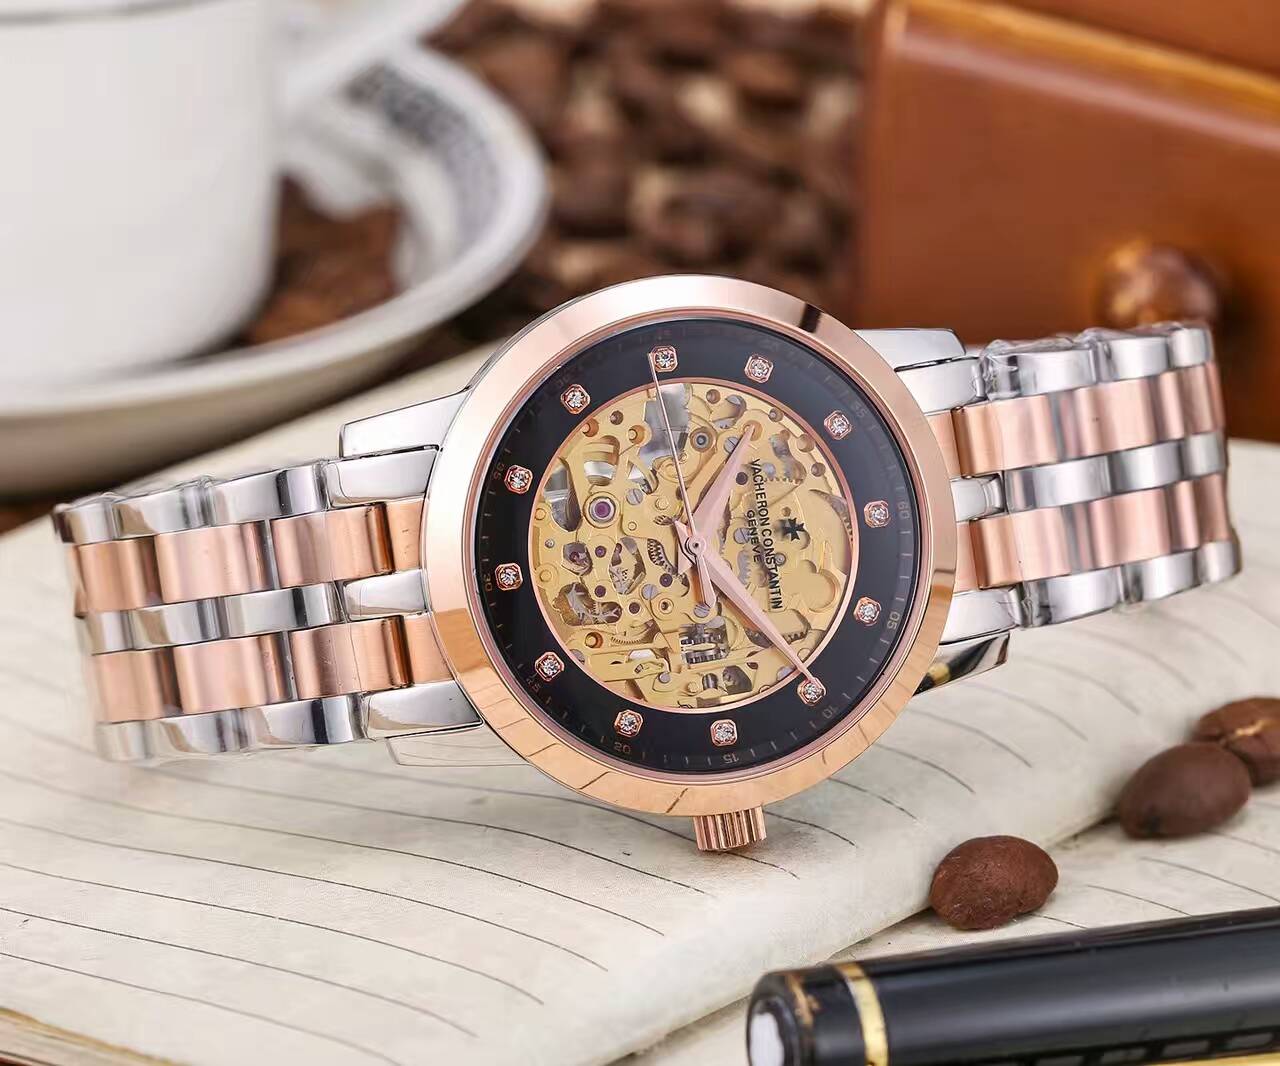 江詩丹頓 藍寶石水晶鏡面 頂級機械機芯 精鋼錶帶 尊貴不凡 風格經典 精品男士腕錶 